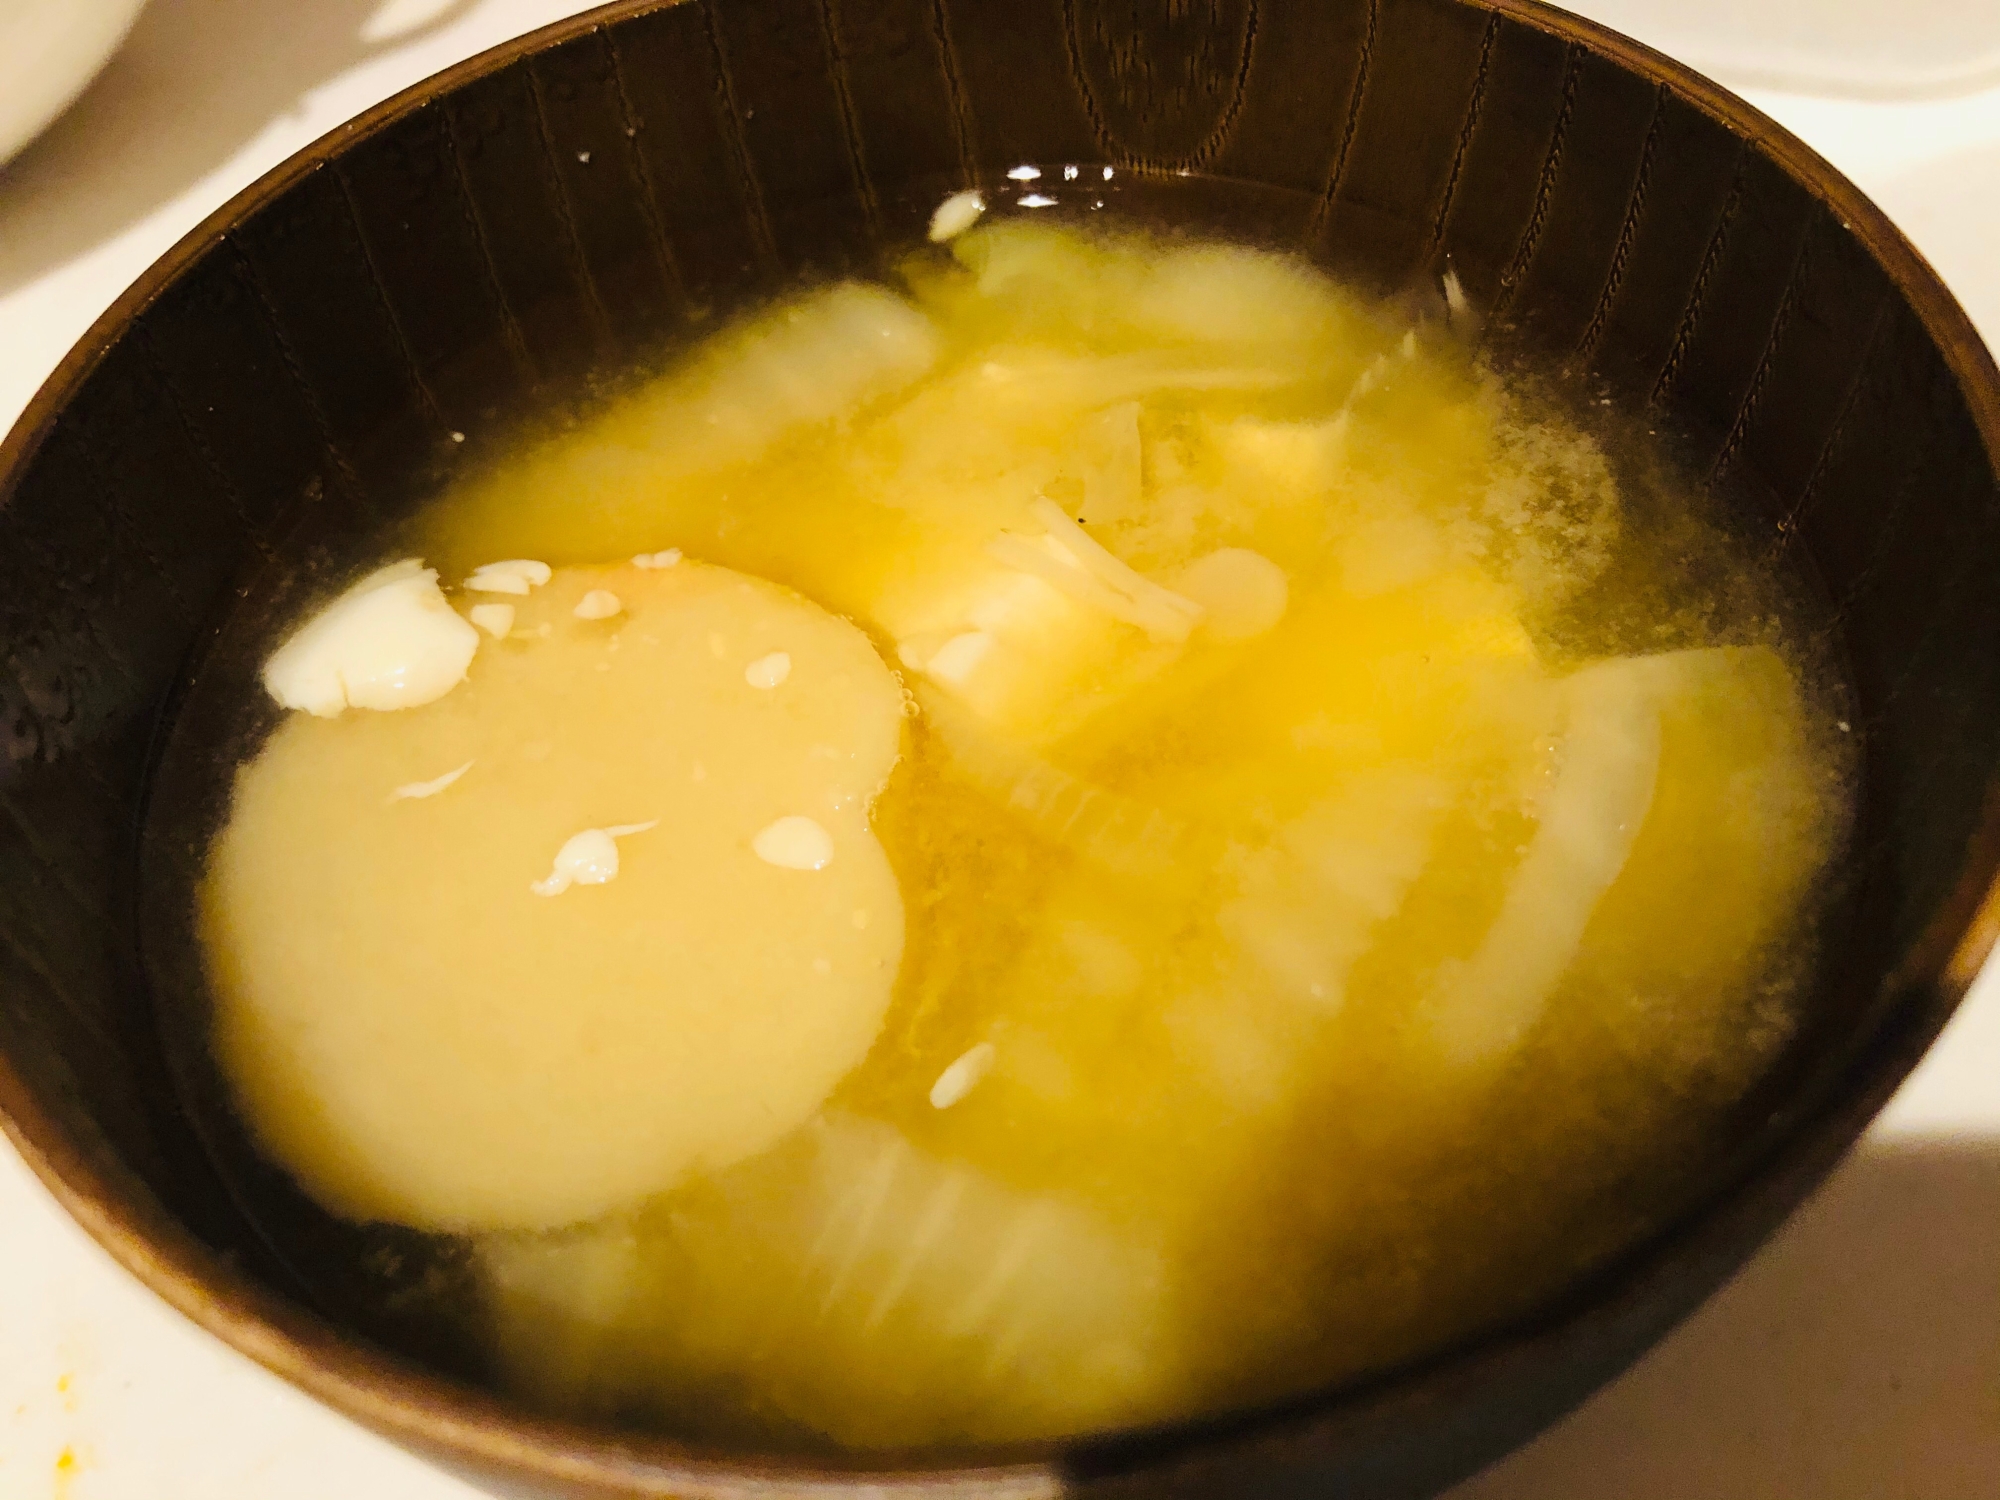 白菜、とうふ、えのき、麩の味噌汁